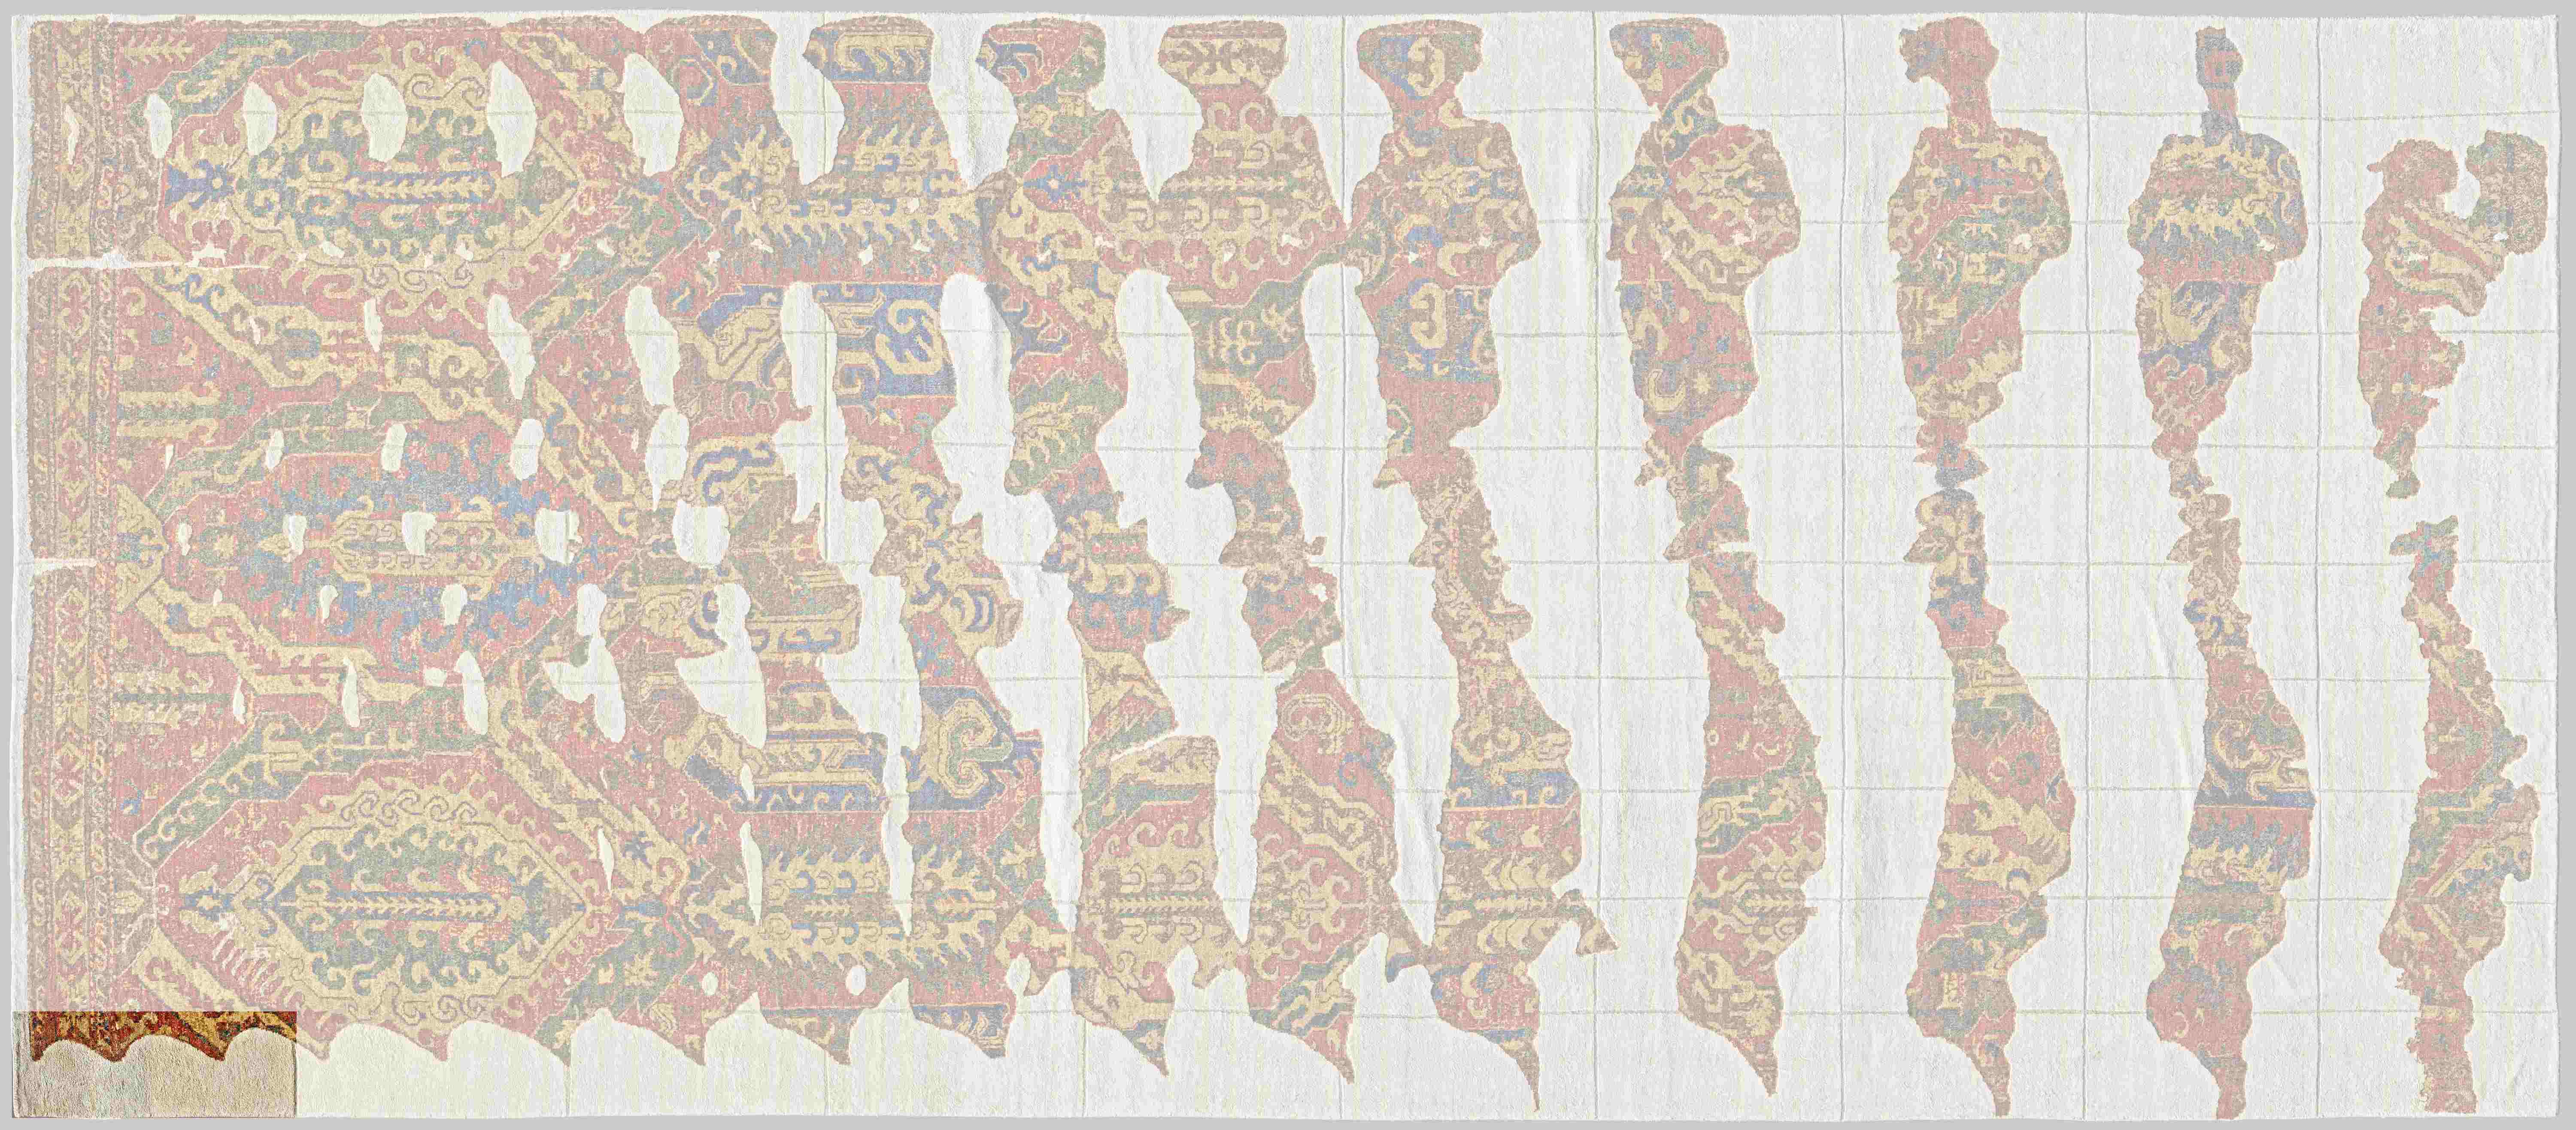 CulturalxCollabs: Fragment No. 1 highlighted © Museum für Islamische Kunst, Heiner Büld